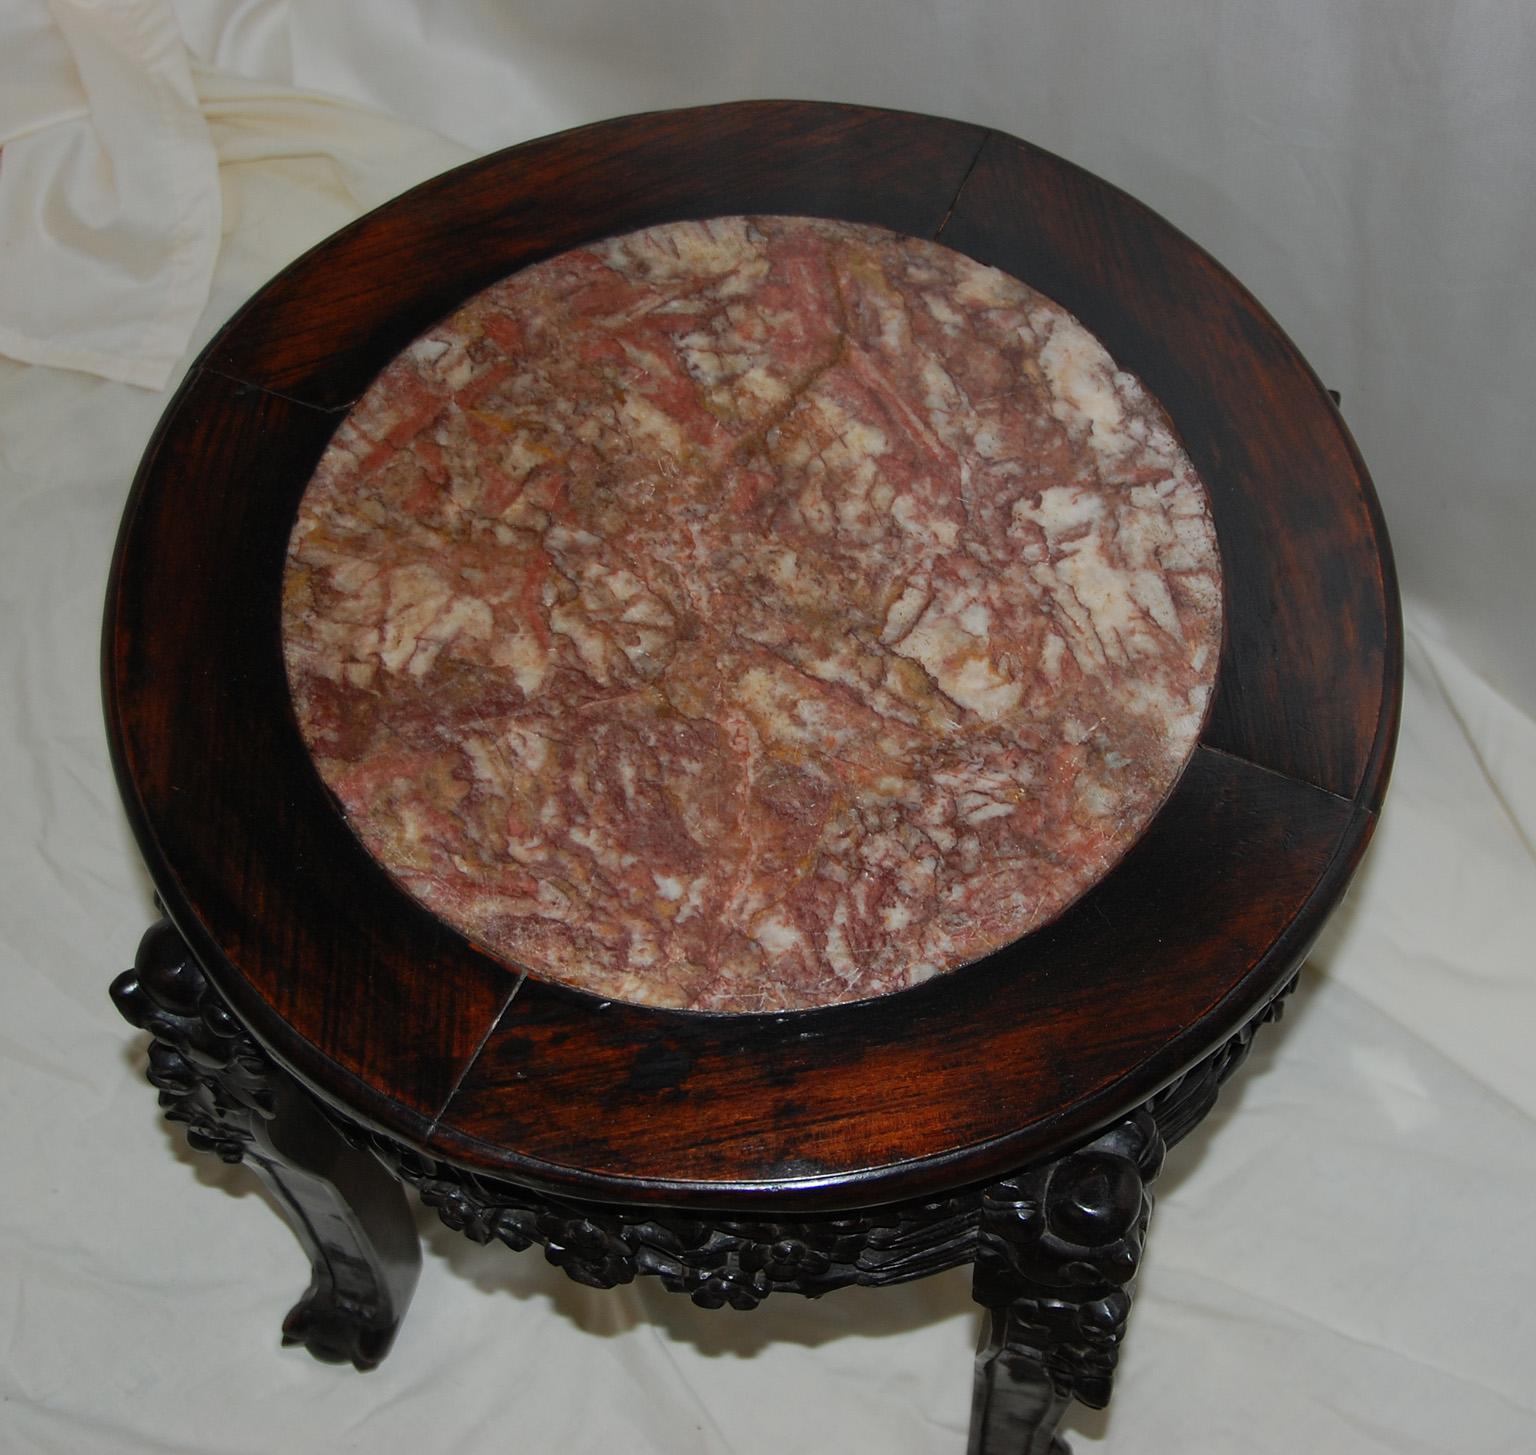 Chinesische Qing-Dynastie Rosenholz geschnitzt Hocker mit rosa Marmor eingelegt Sitz. Die filigrane Schnitzerei steht in schönem Kontrast zu der runden Rosenmarmoreinlage der Sitzfläche. Dieser Hocker lässt sich leicht als zusätzliche